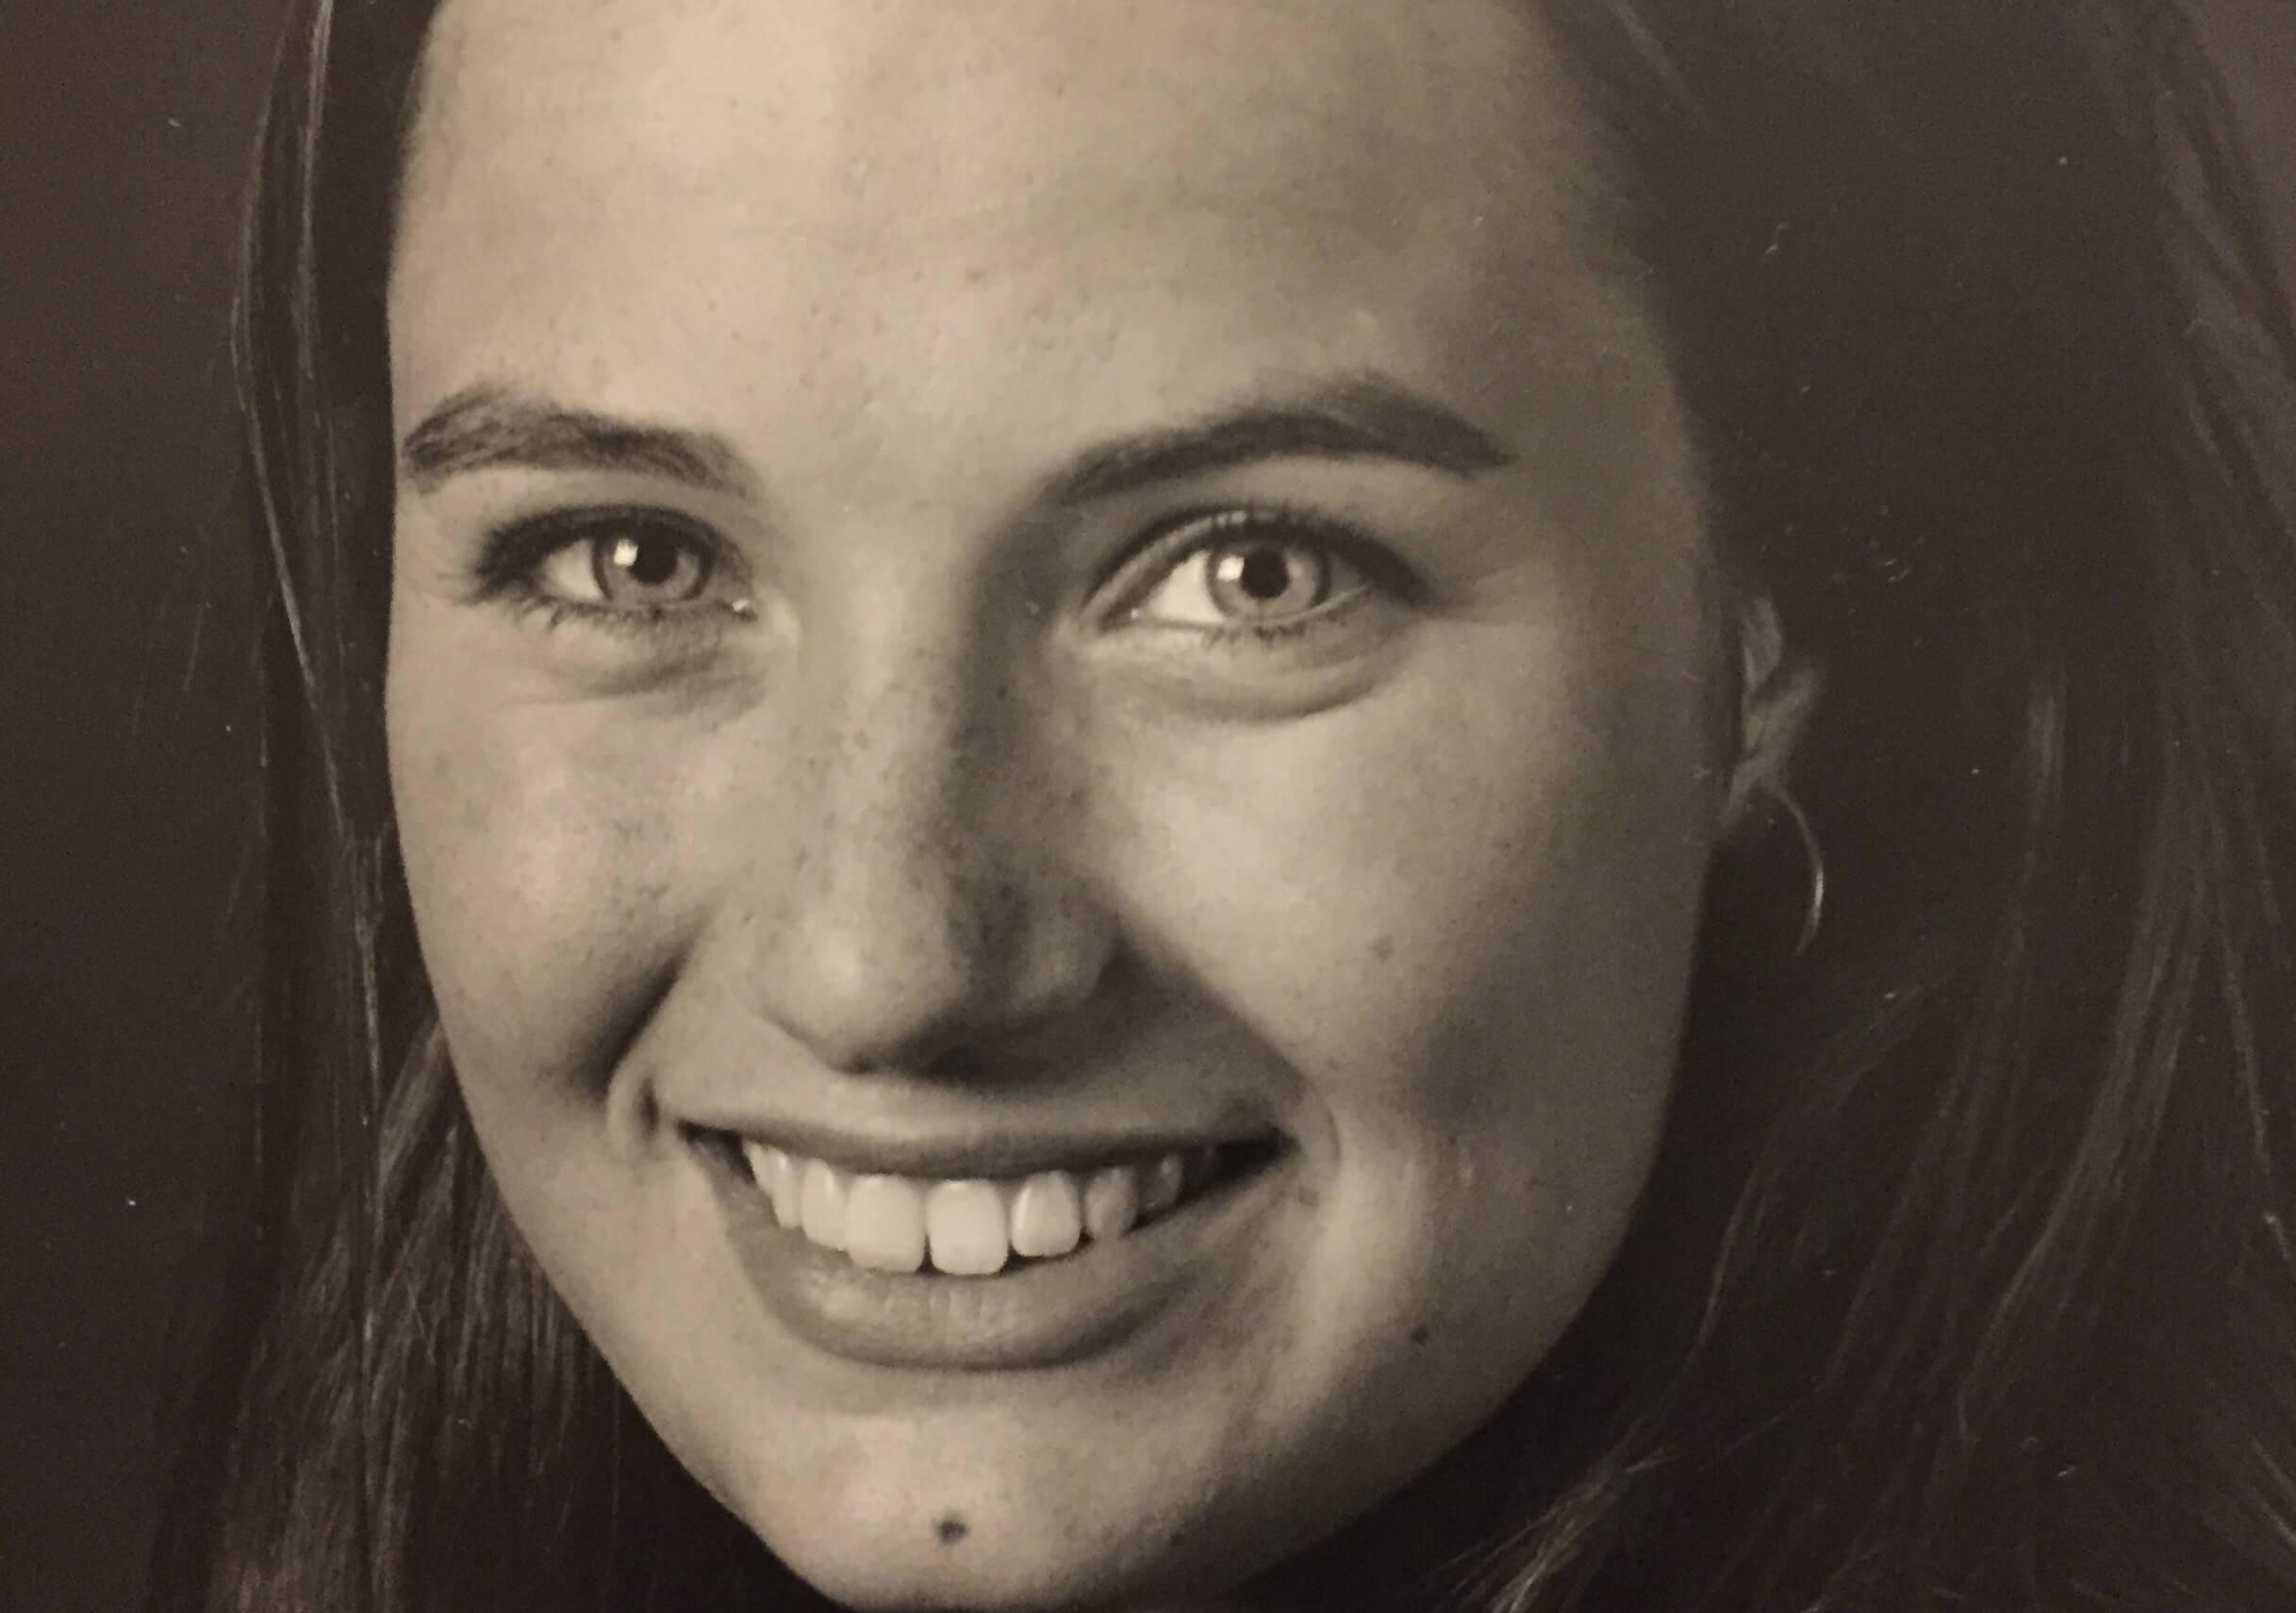 Maria Steno var kun 18, da hun i 1997 blev valgt ind i kommunalbestyrelsen i Birkerød. Når der var fest, undskyldte hun sig gerne med lektier for at undgå pinlige episoder på dansegulvet og det har kostet vigtig relationsopbygning i den unge politikers liv.